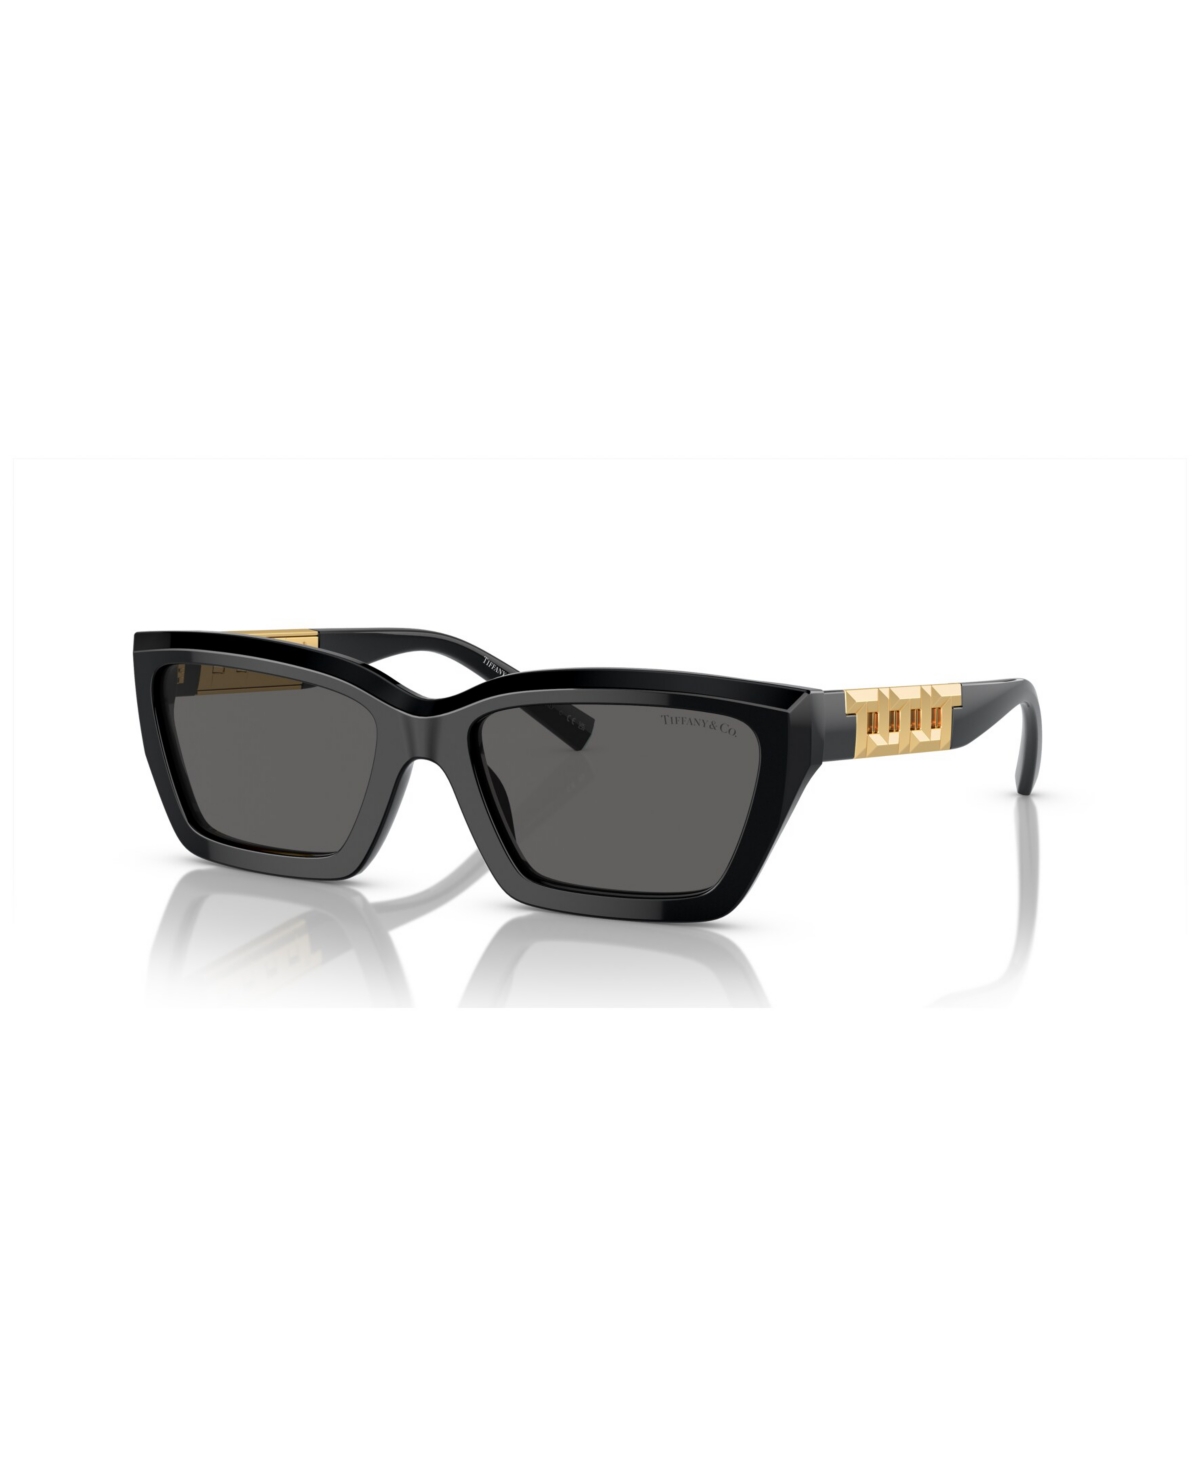 Tiffany & Co Women's Sunglasses Tf4213 In Black